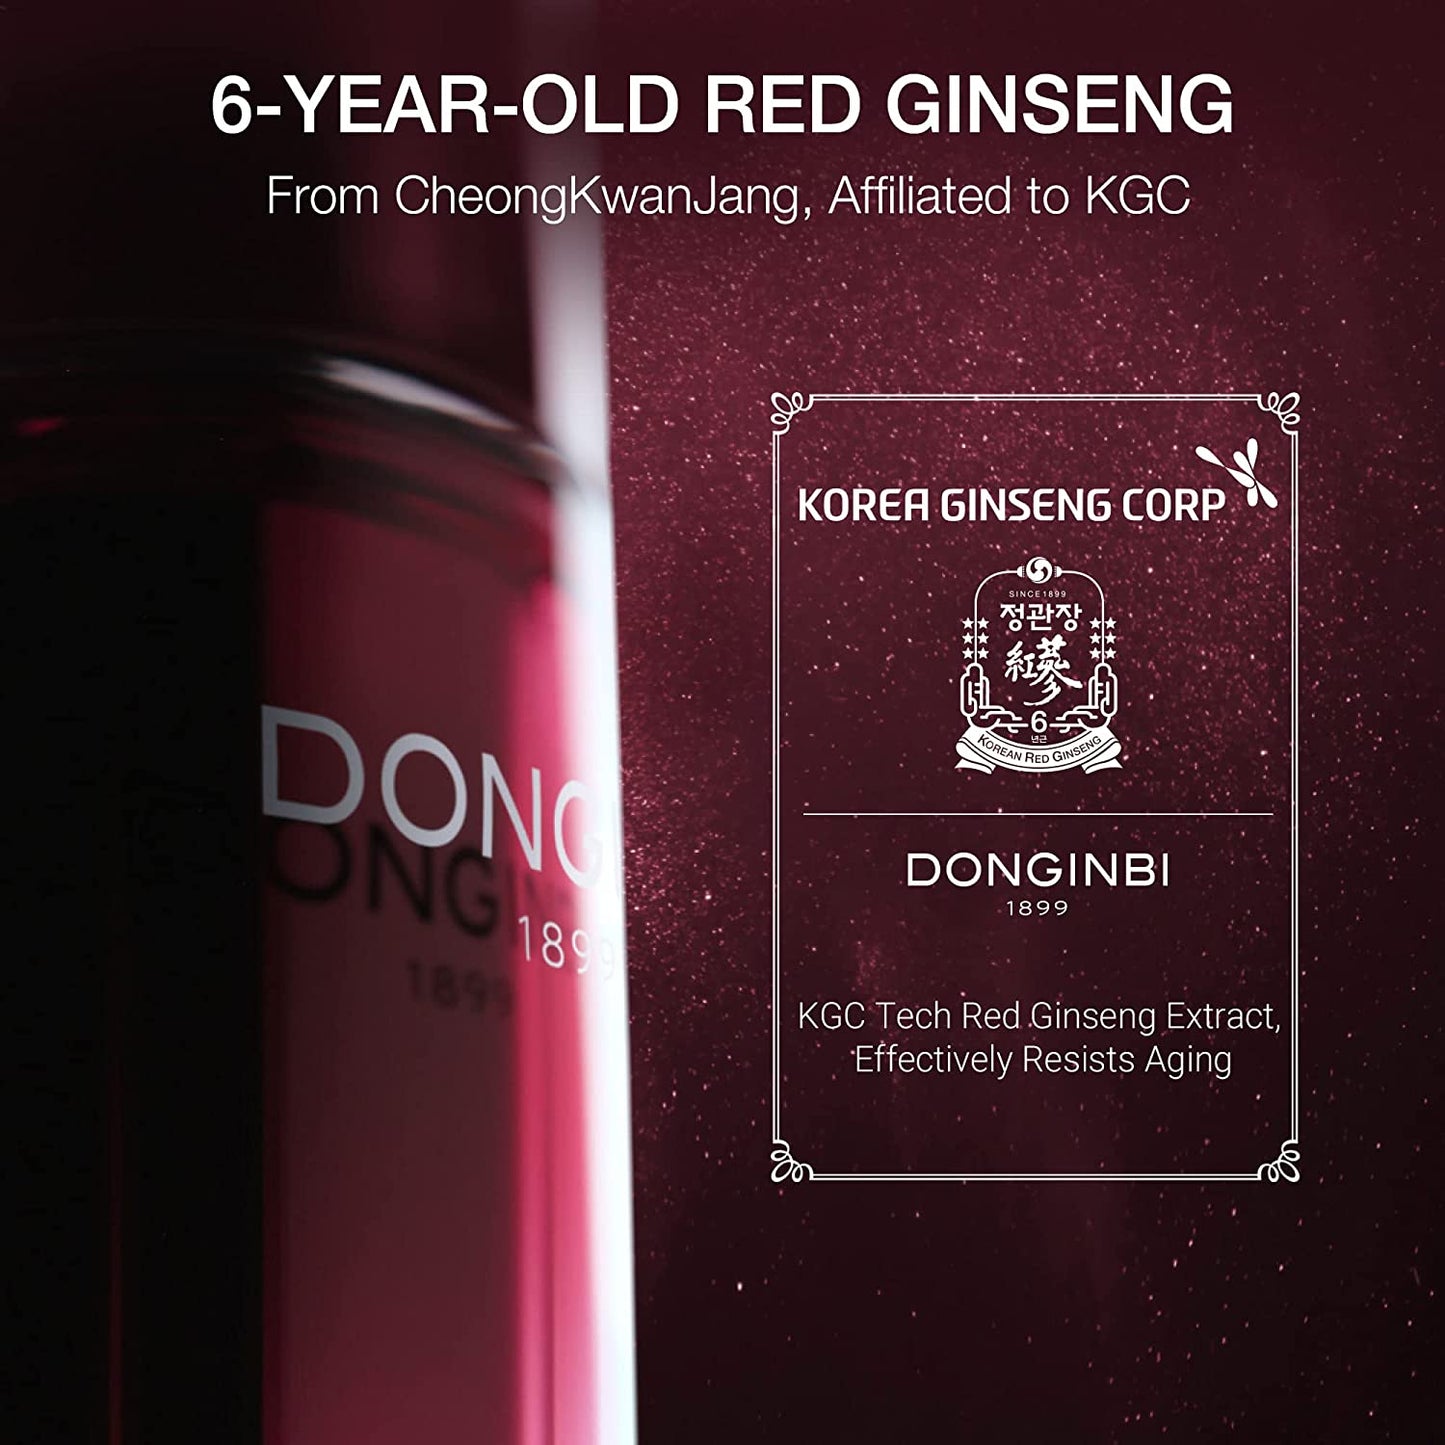 Anti-Aging Serum DONGINBI Daily Defense Serum EX, Anti-Wrinkle & Antioxidant Serum for Face, Korean Red Ginseng Skin Care - 1.01Oz, 30ml